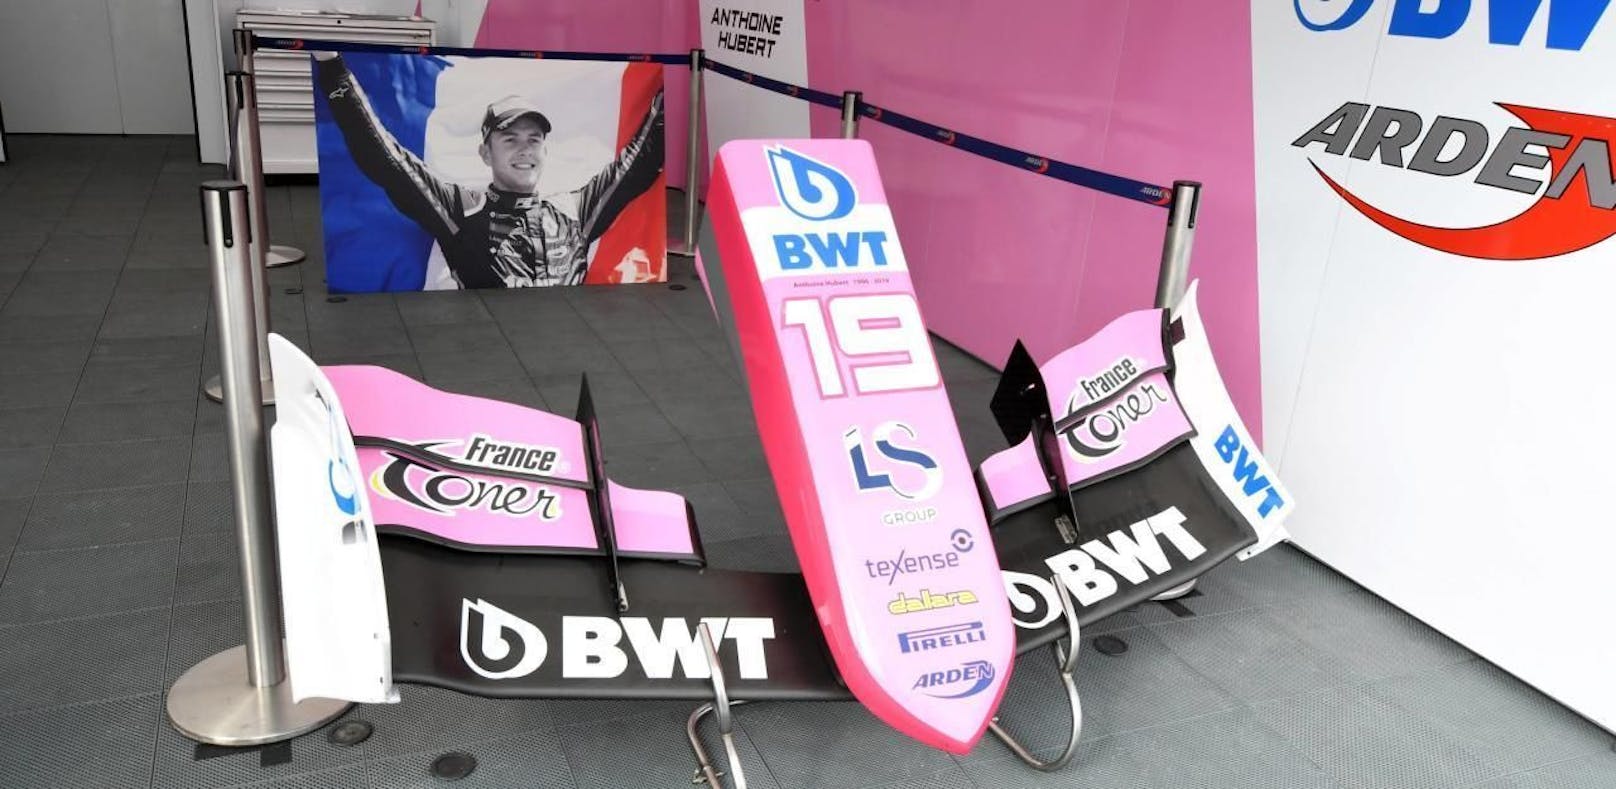 Trauer um Anthoine Hubert. Nach seinem tödlichen Unfall in Spa gedenkt sein Team BWT Arden in Monza mit einem ganz speziellen Boxendesign.